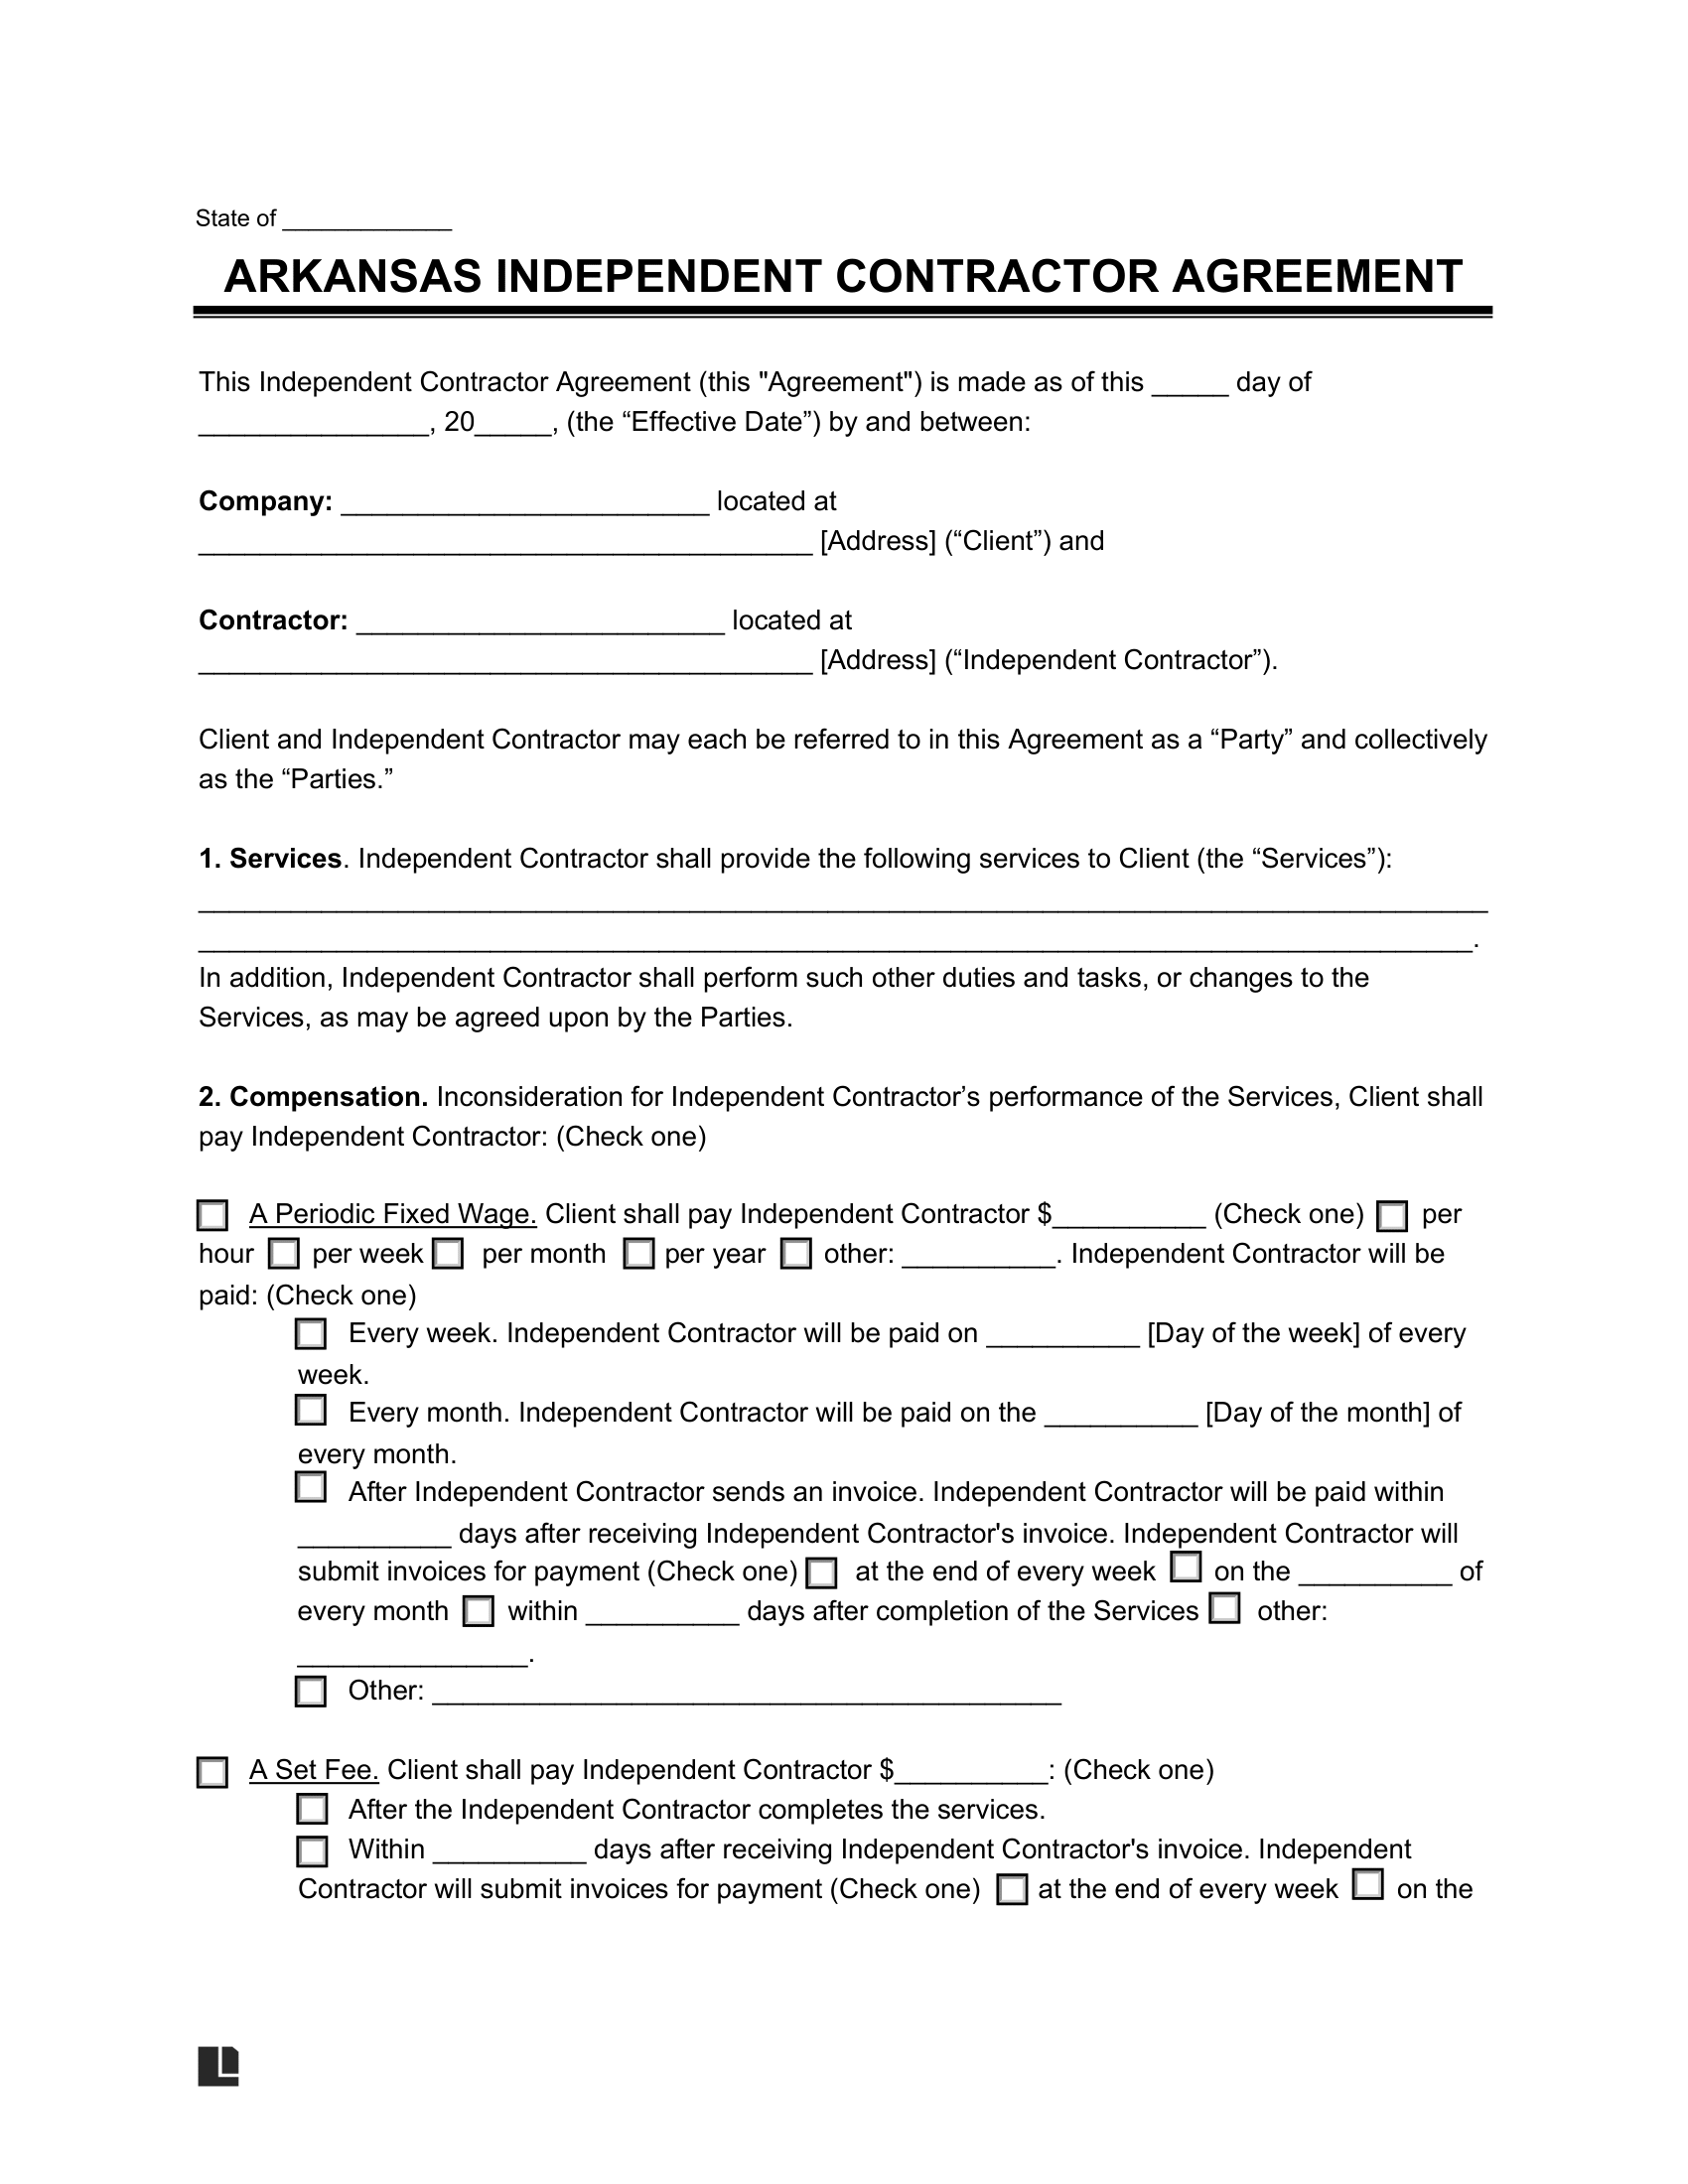 Arkansas Independent Contractor Agreement screenshot